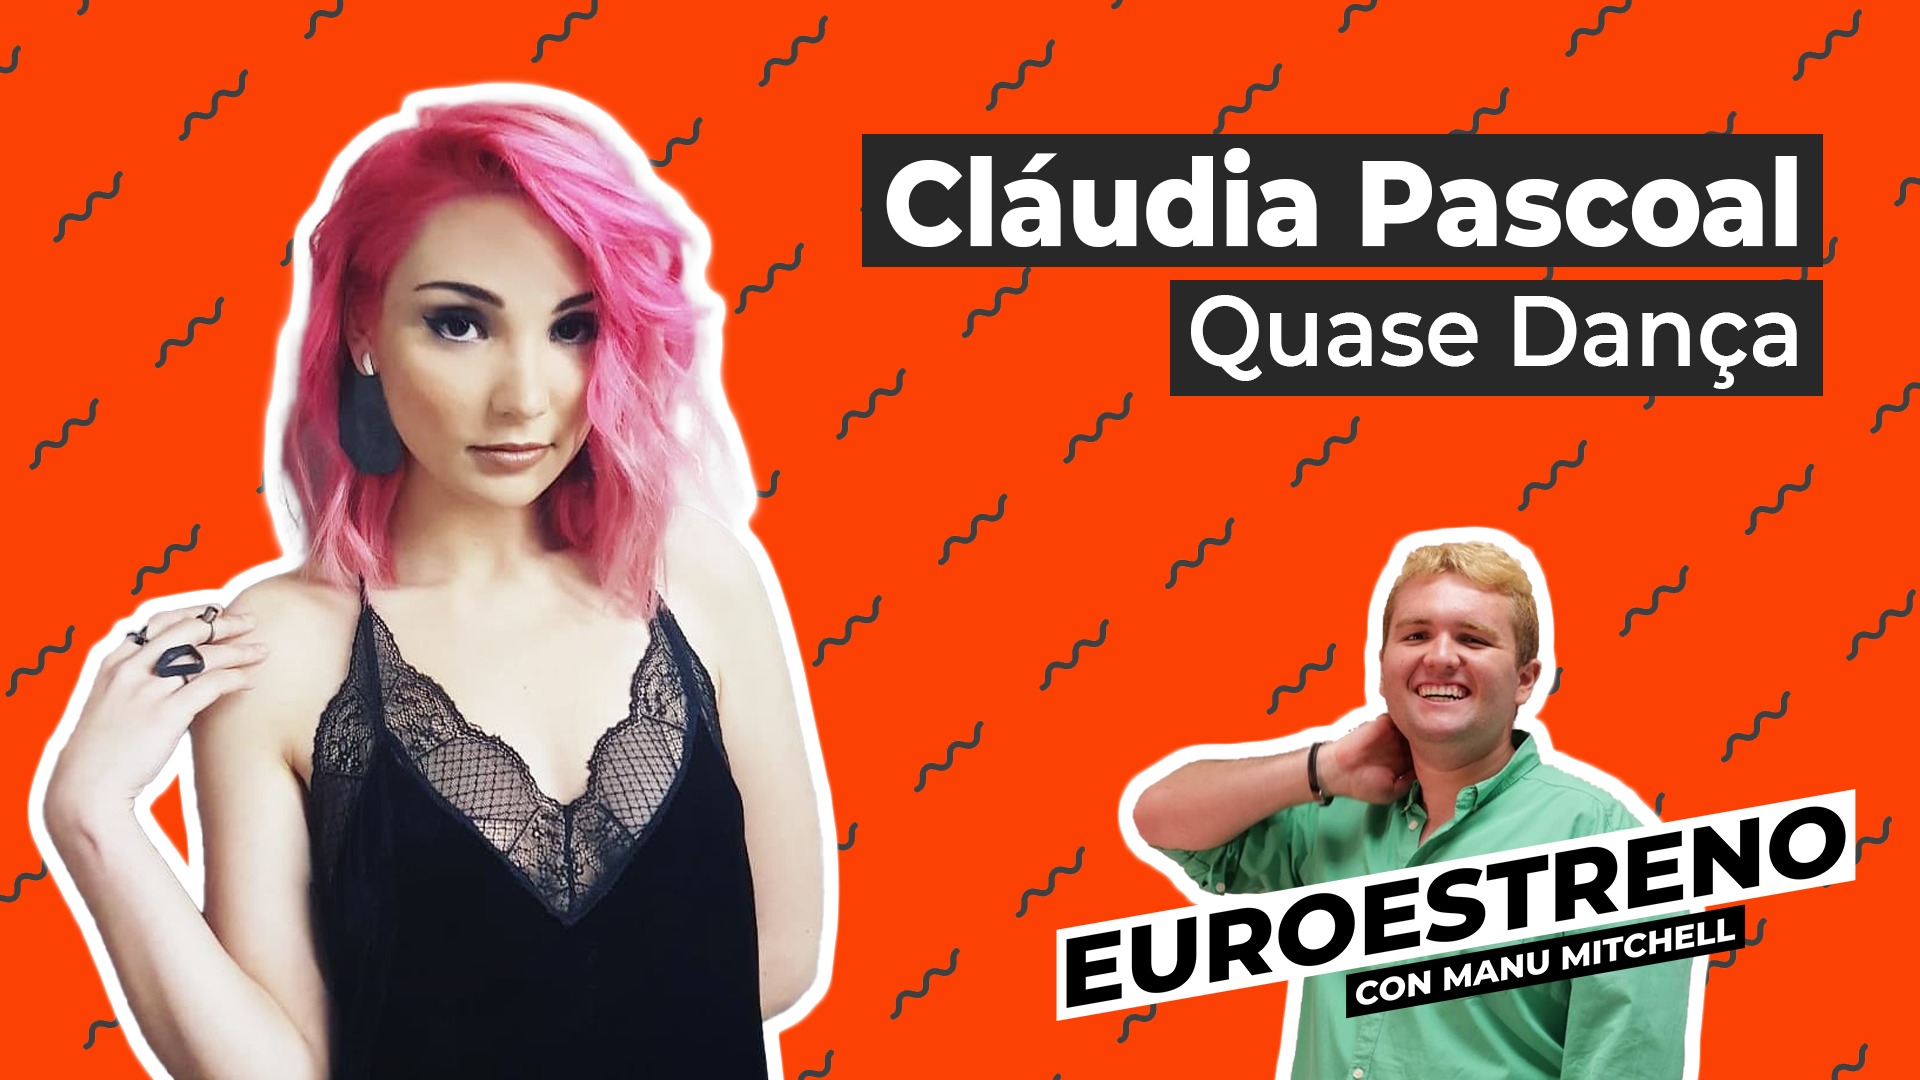 Cláudia Pascoal te invita a ser tu mismo en ‘Quase Dança’ – EuroEstreno (3×13)